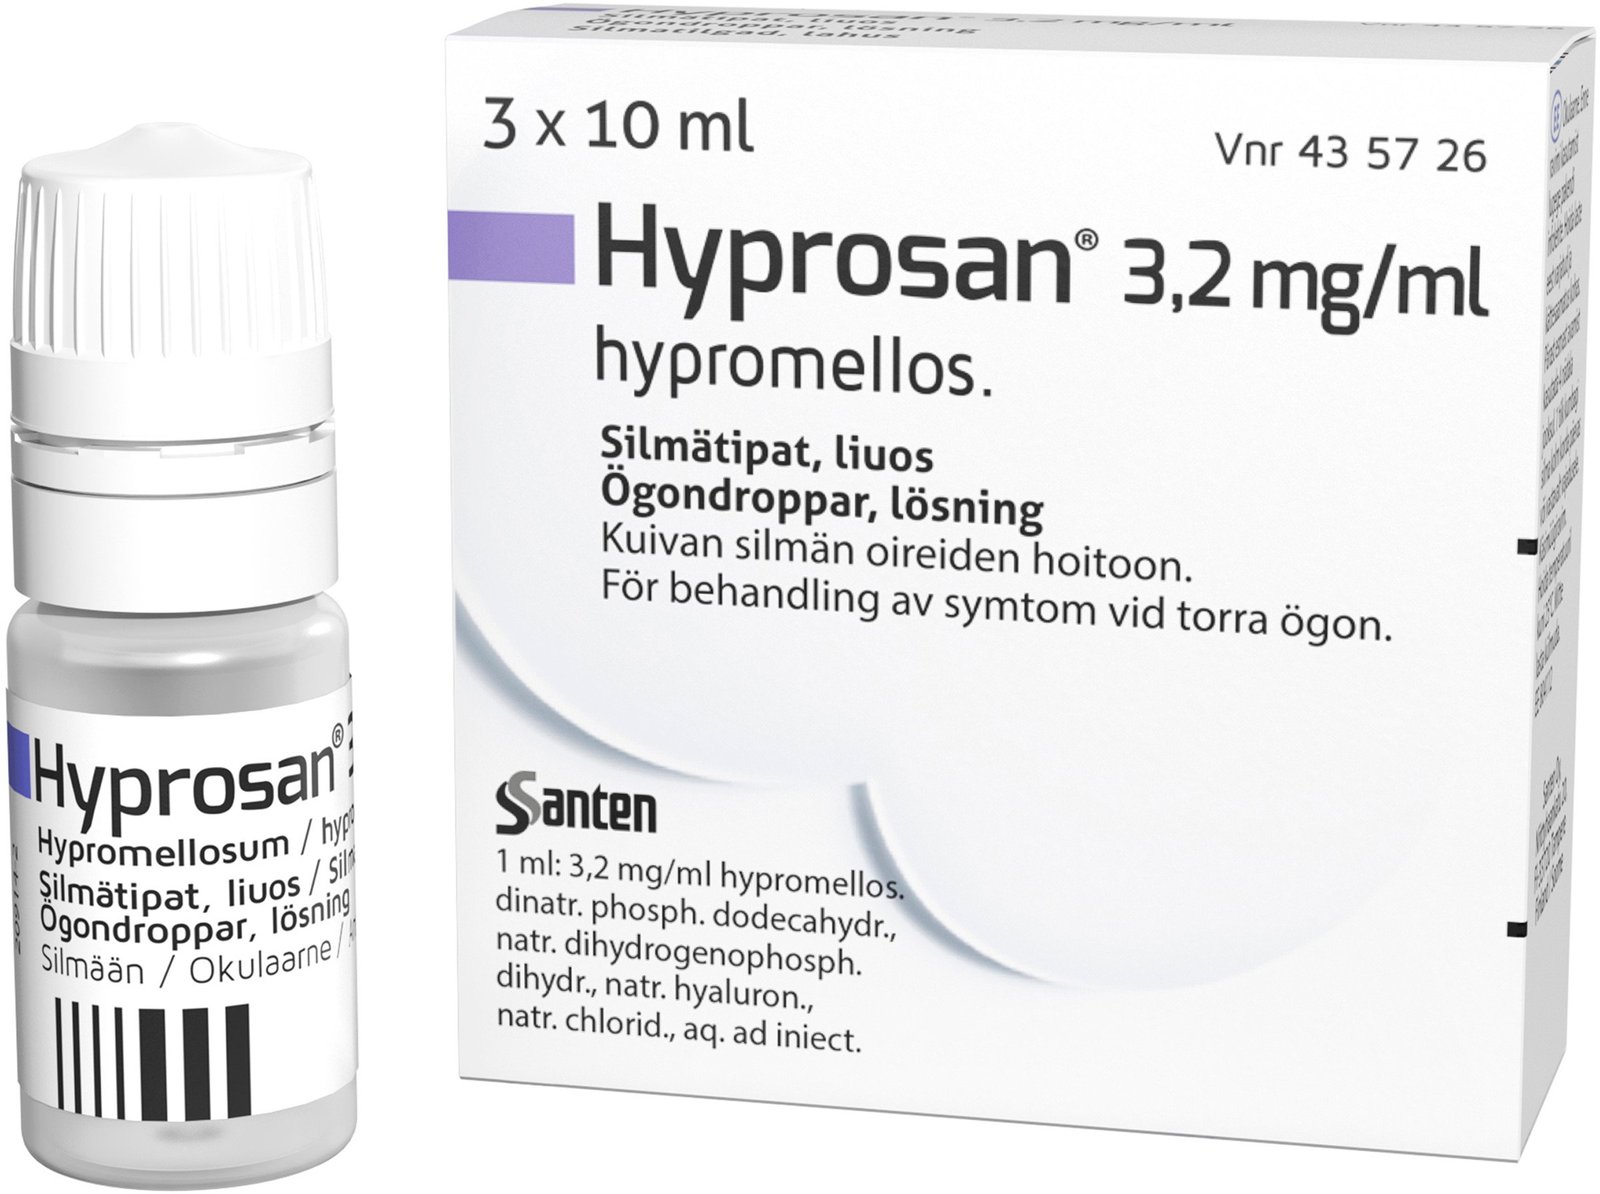 Hyprosan Ögondroppar 3,2 mg/ml 3 x 10 ml